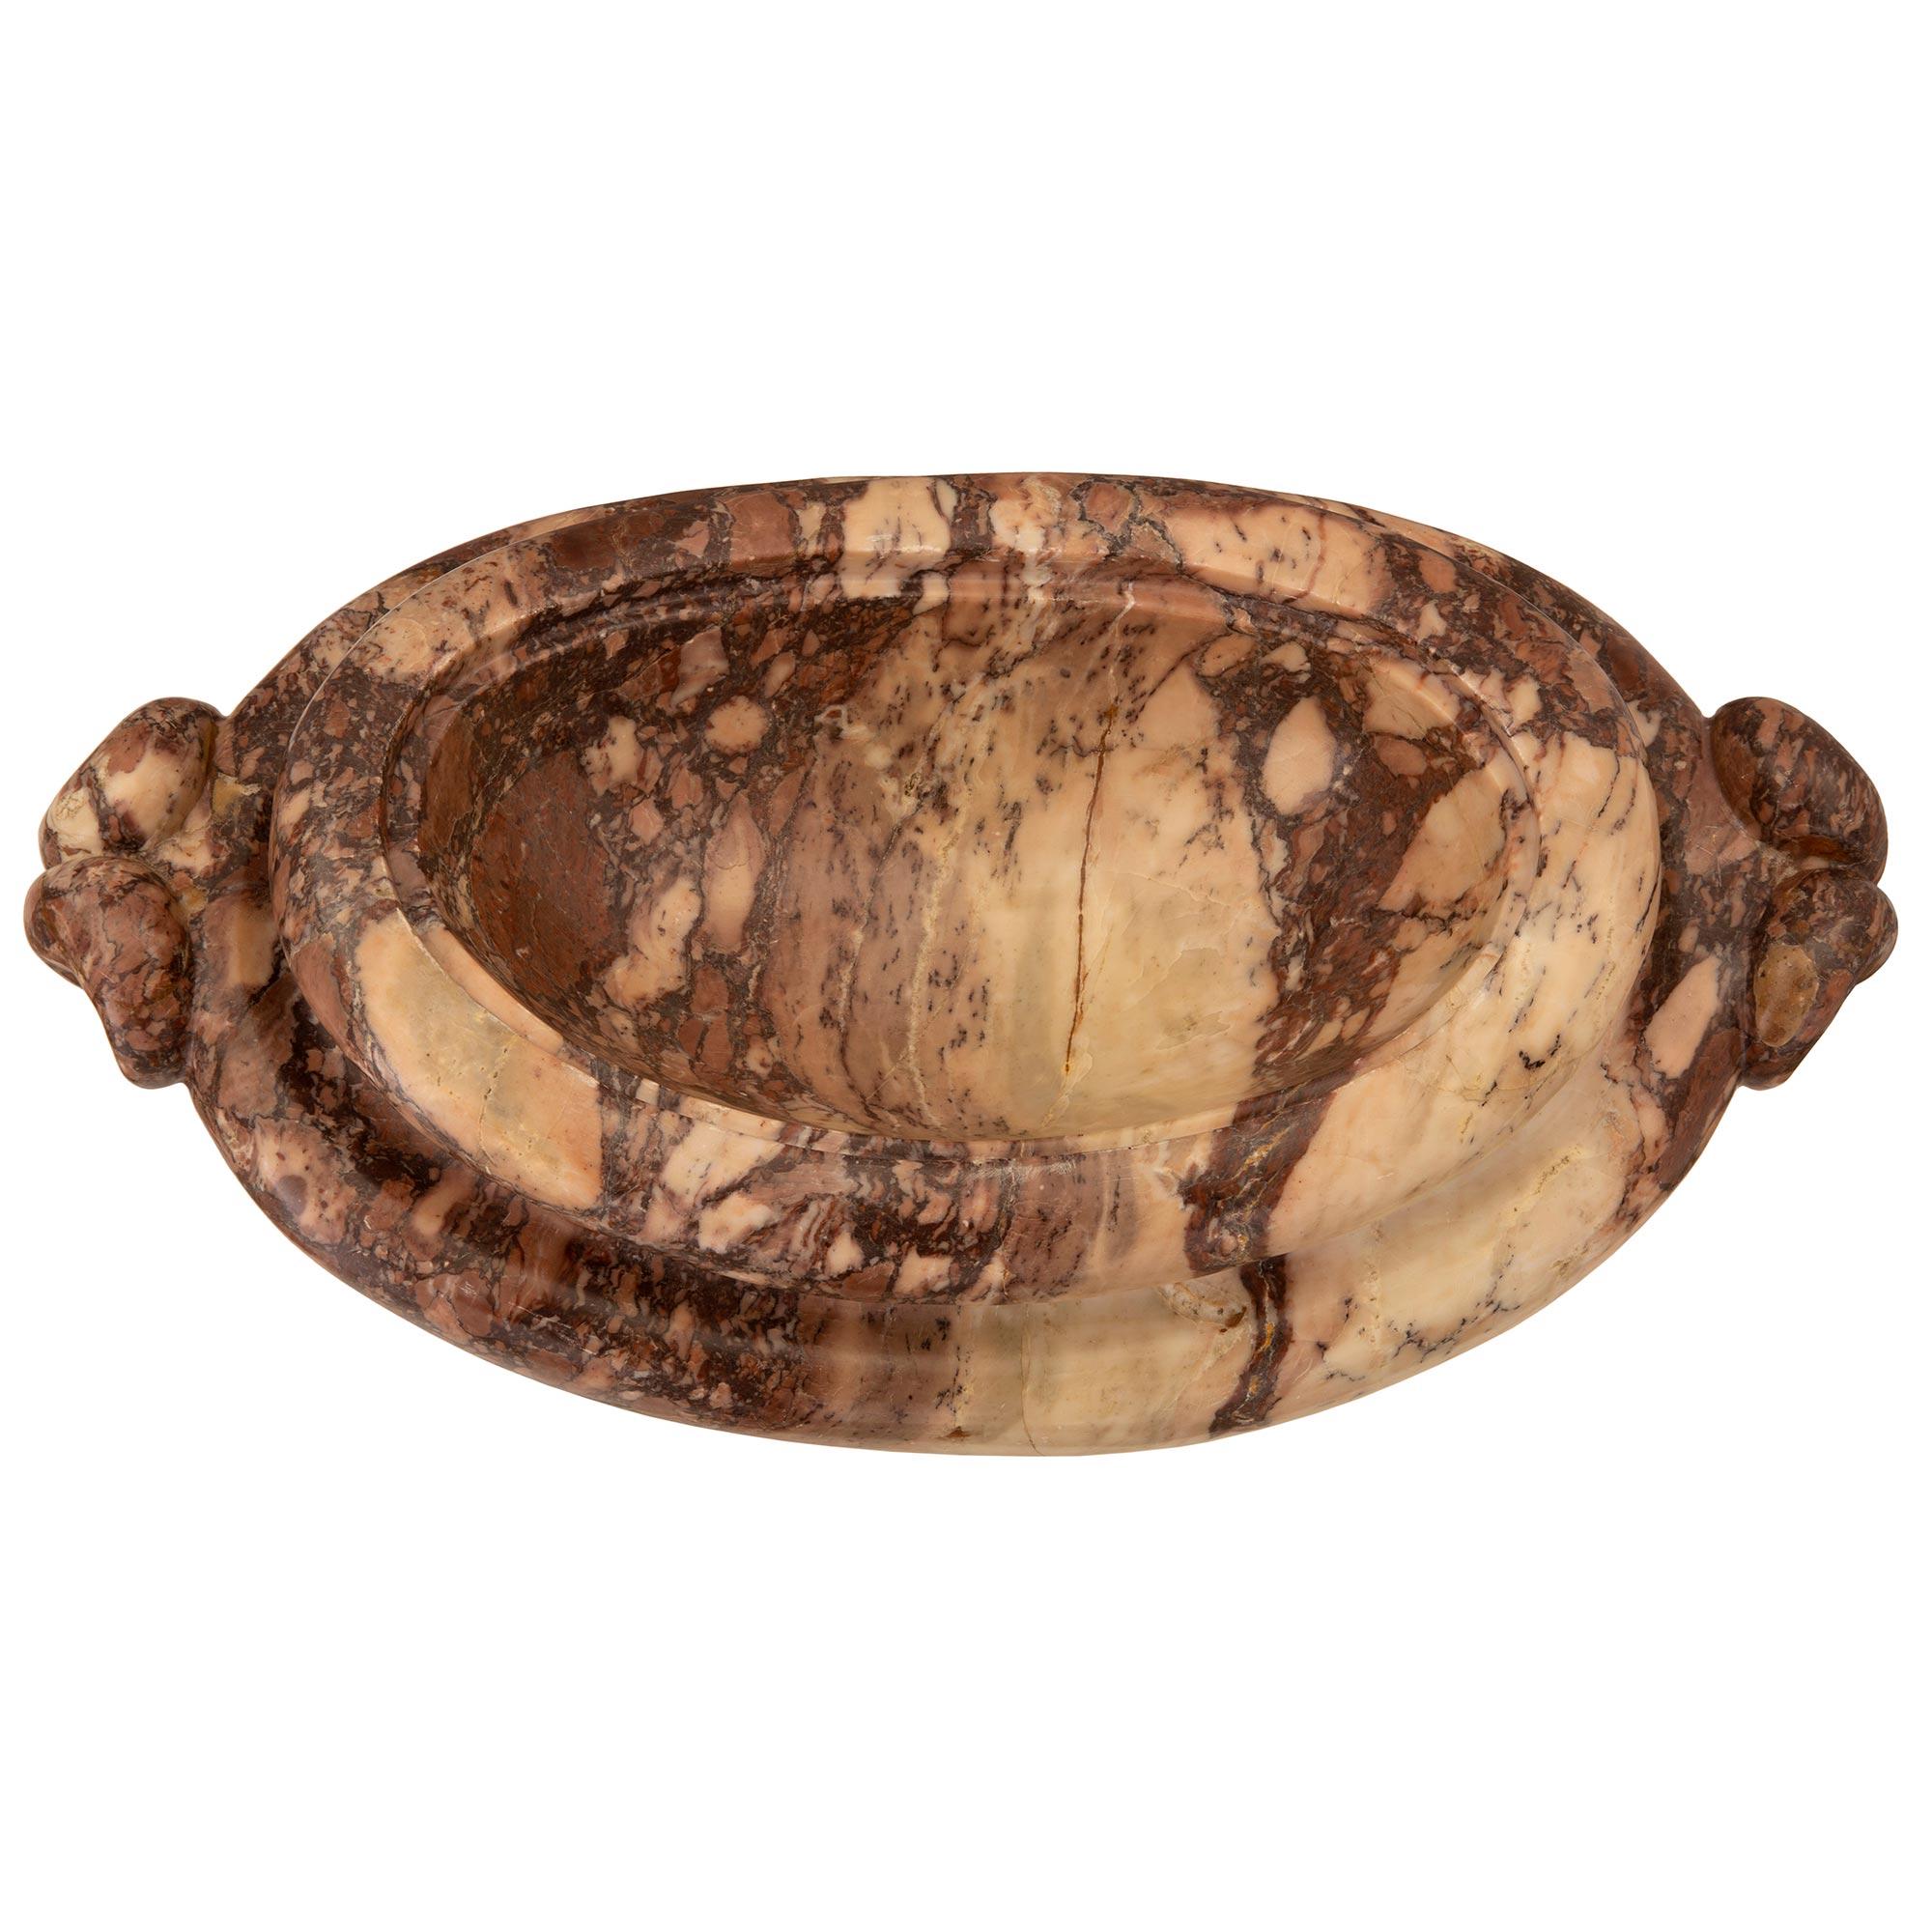 Exceptionnelle urne italienne du XIXe siècle à couvercle en marbre Brèche Violette. L'urne est surélevée par un élégant support circulaire en forme de socle tacheté, sous le corps unique et de forme très décorative. Le corps présente une forme